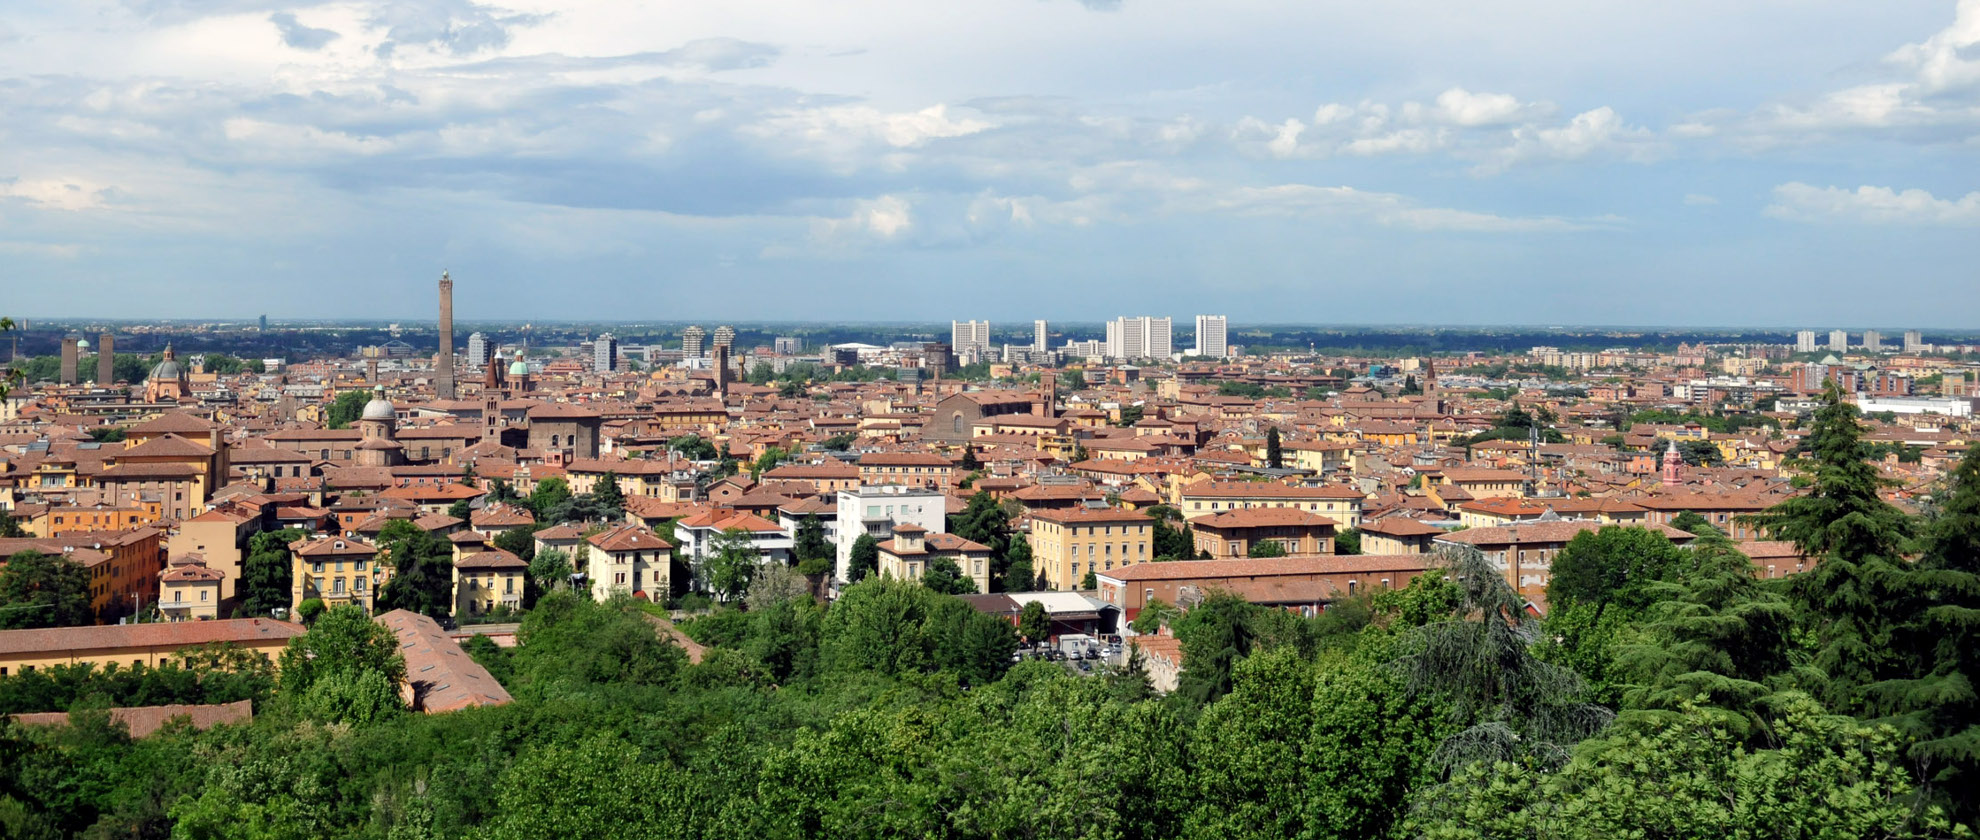 Immagini di Bologna 